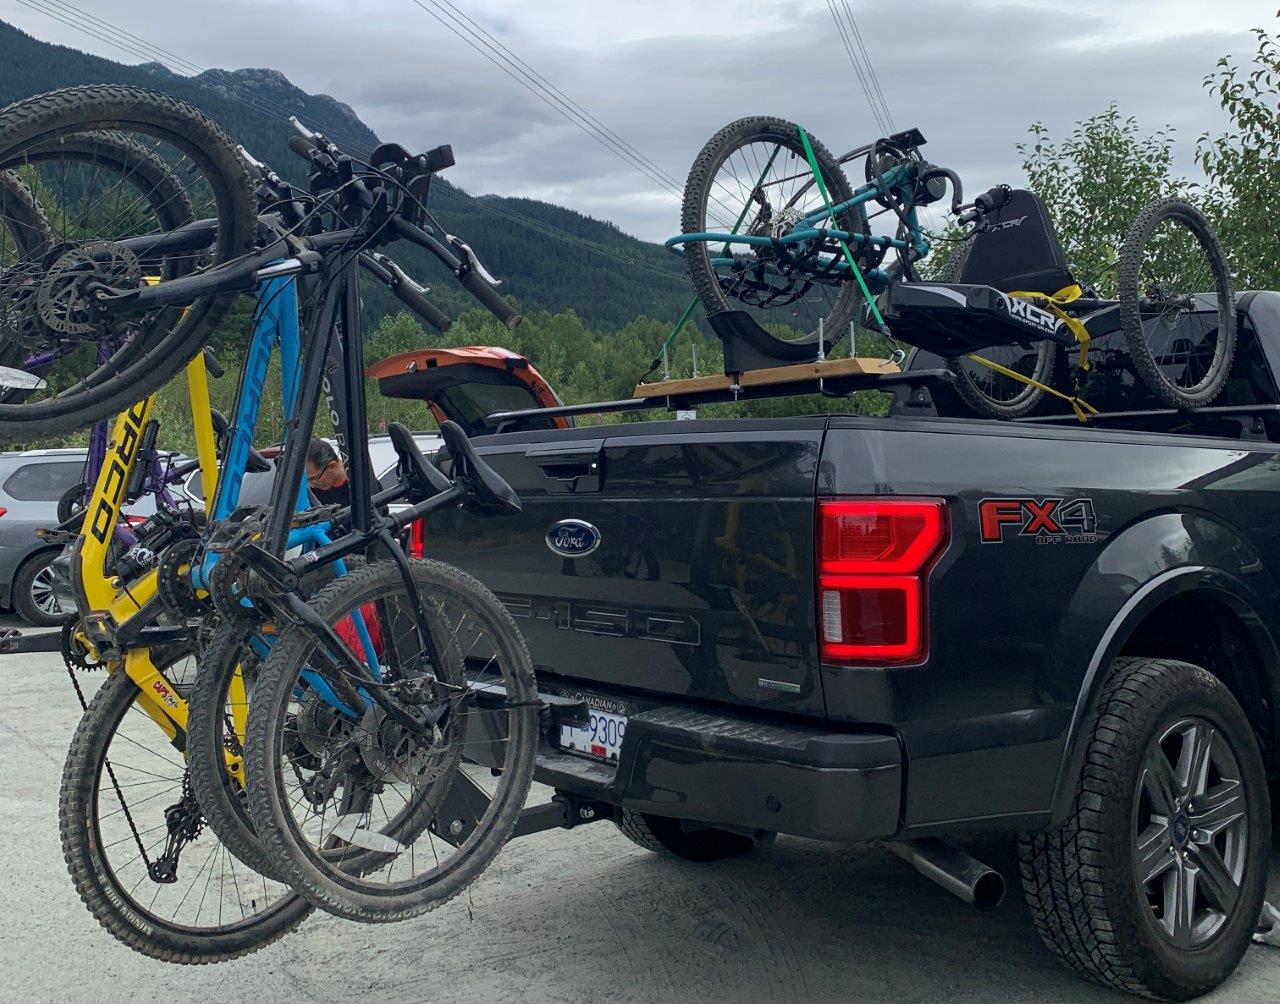 Laden Sie die Mountainbikes auf! Wir fahren in Whistler Rad - Foto Codi Darnell